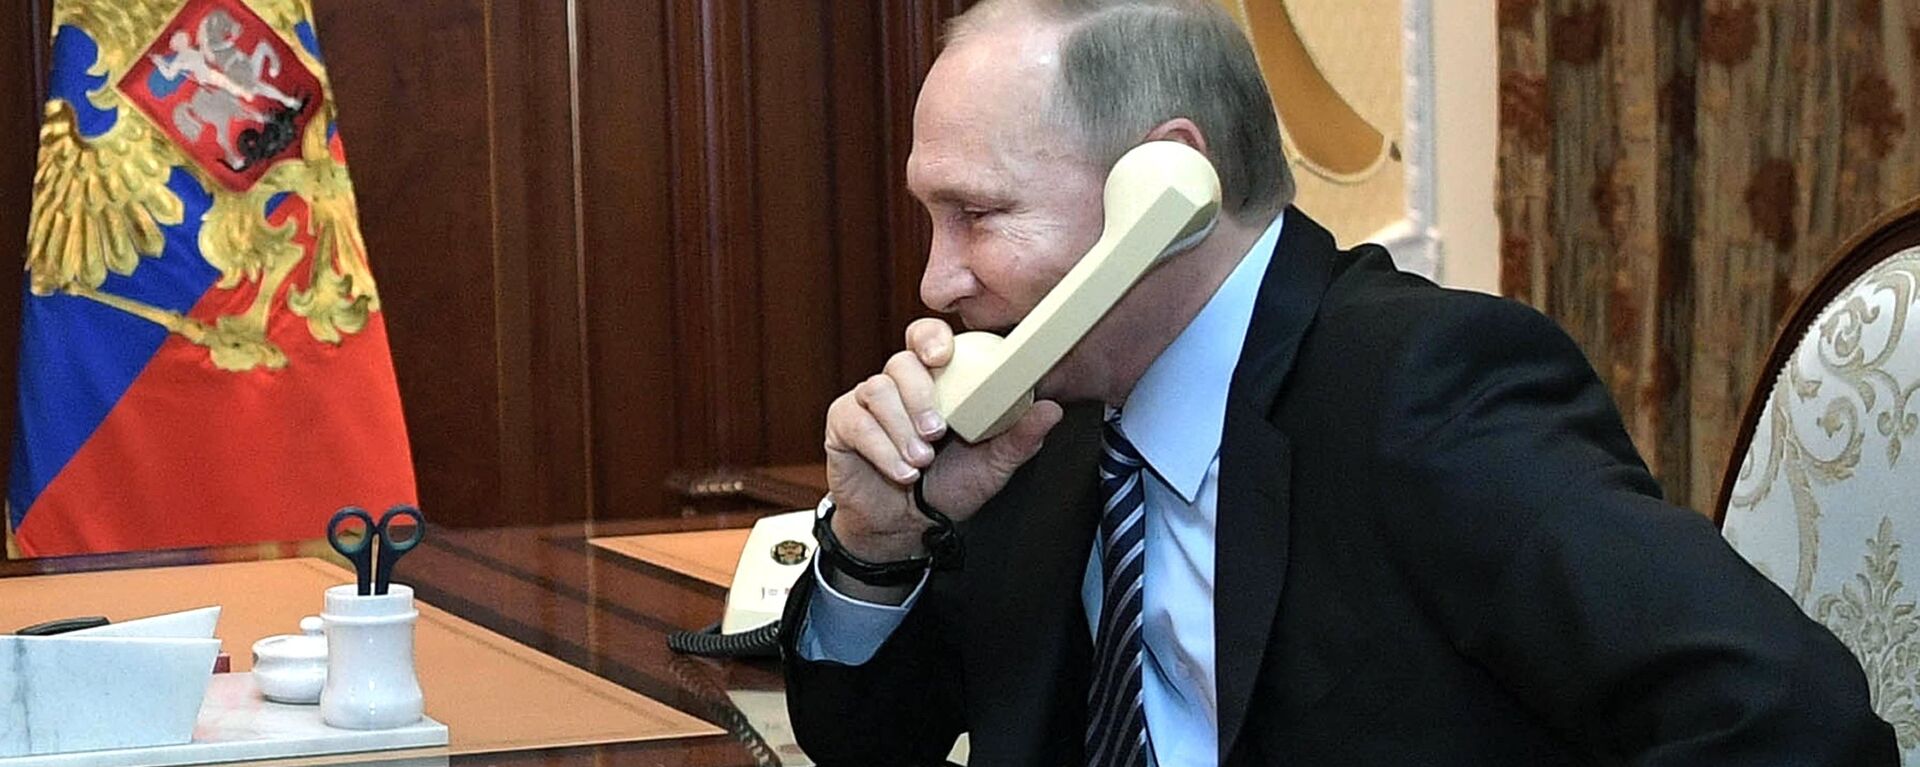 Vladímir Putin, presidente de Rusia, habla por teléfono (archivo) - Sputnik Mundo, 1920, 03.08.2021